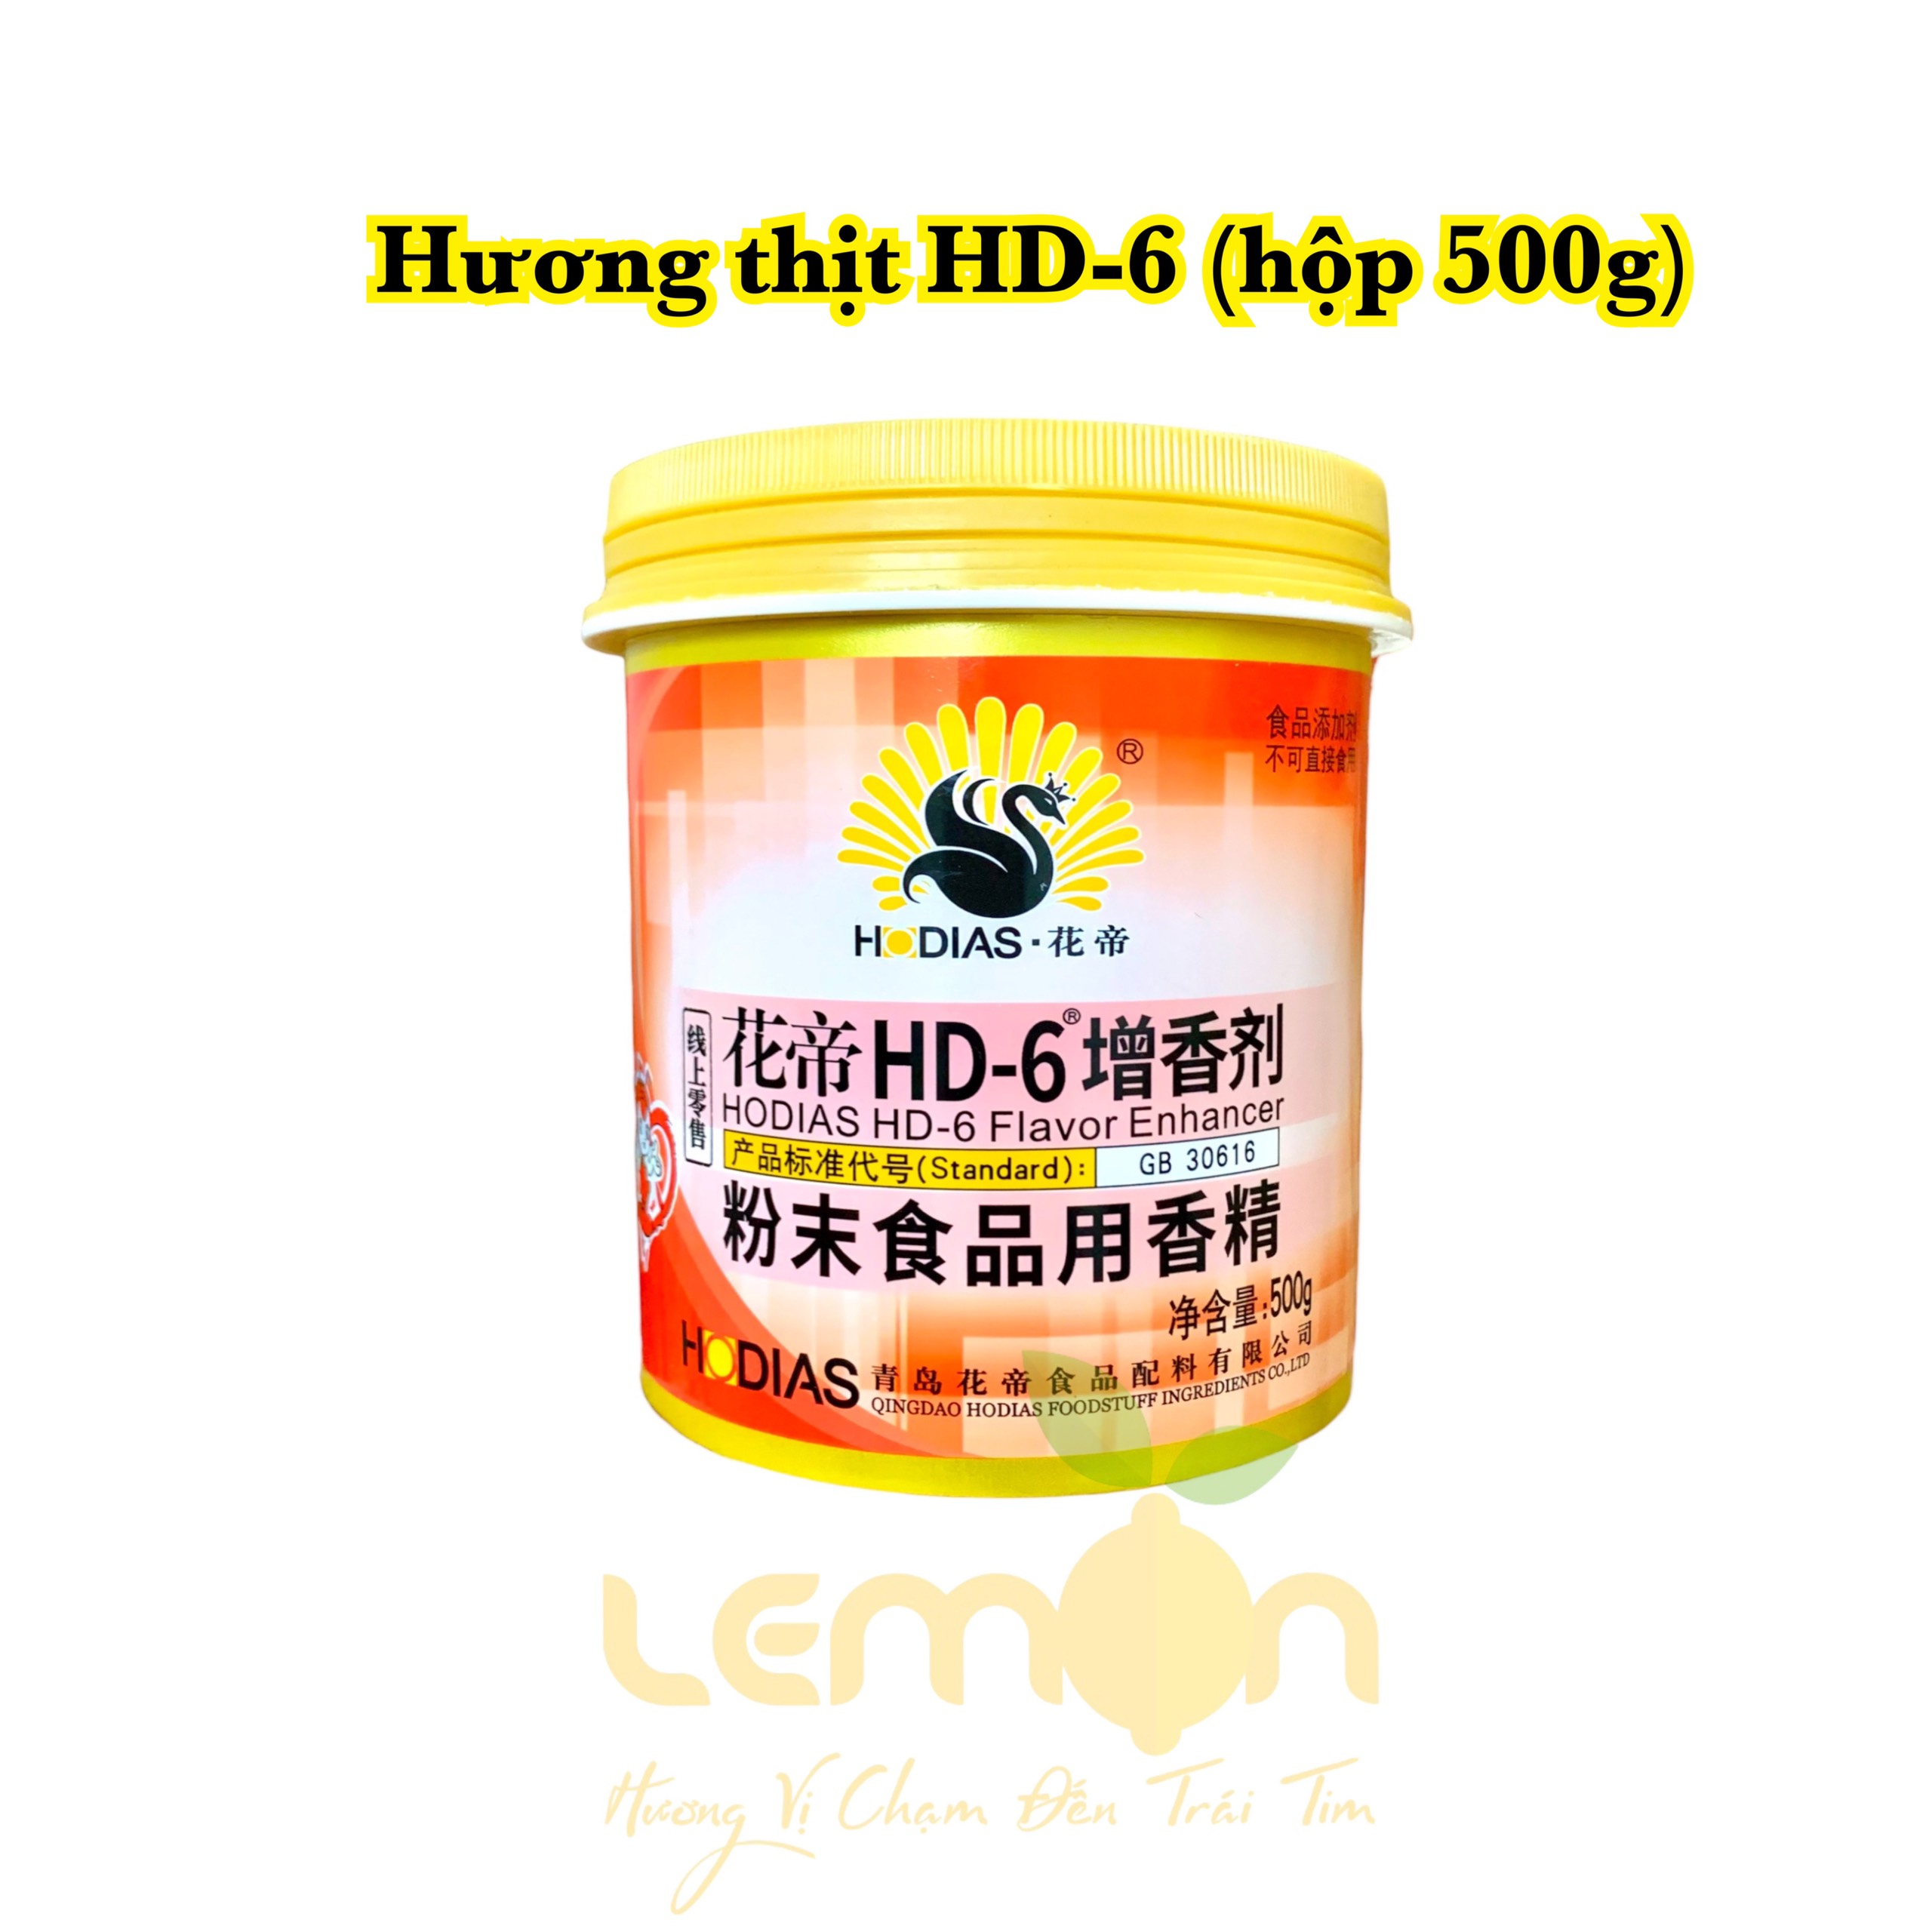 Hương thịt HD-6 làm tăng hương thịt cho giò chả jambon gà ủ muối món ăn Trung  (Hộp 500g)